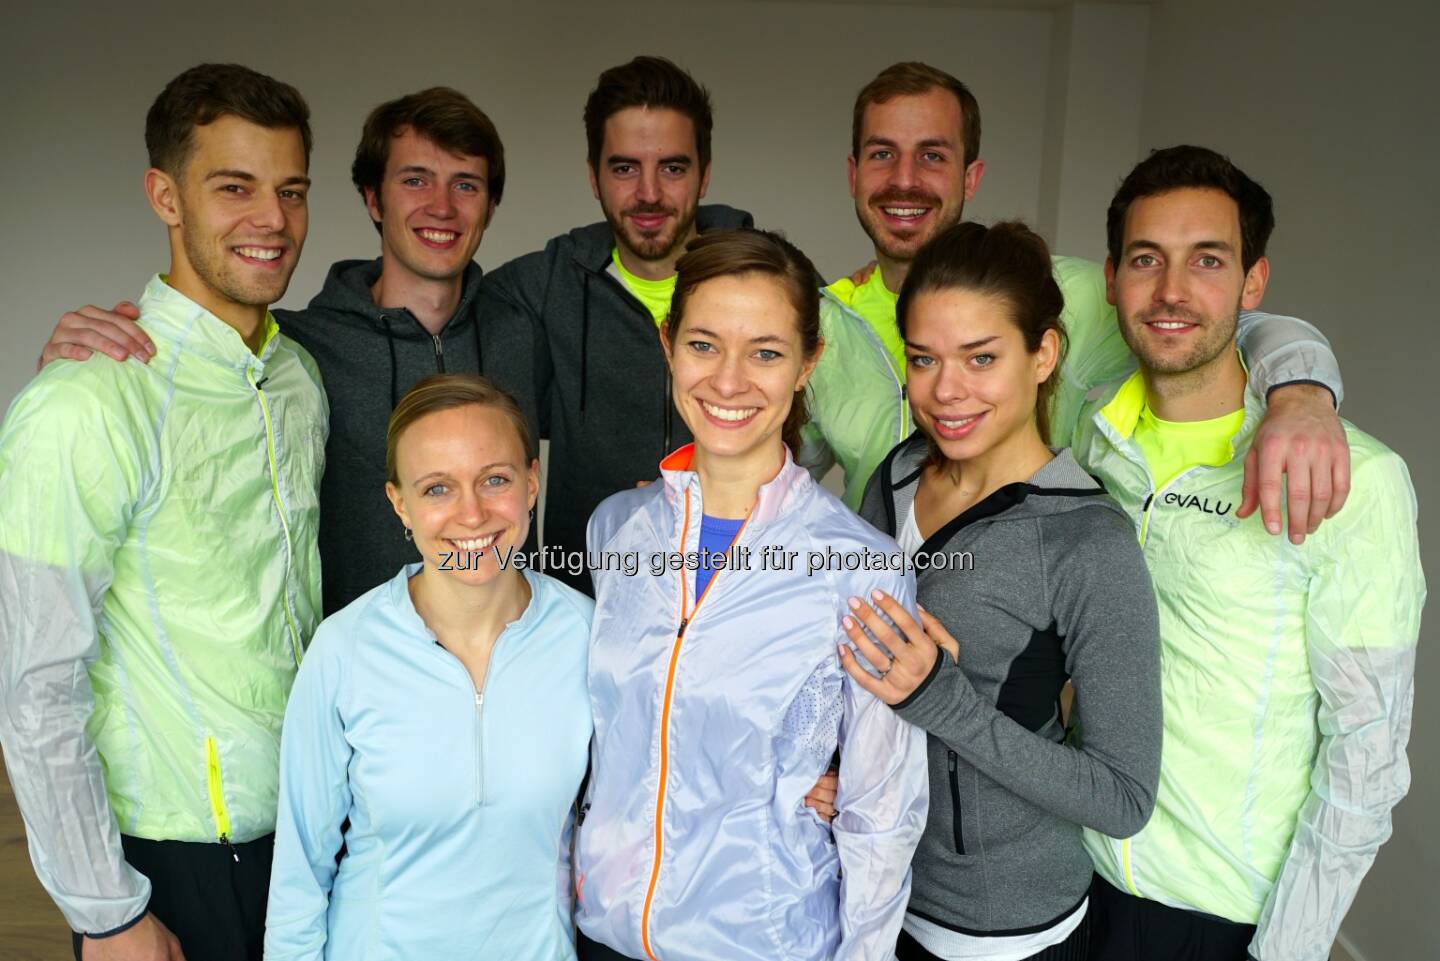 Das evalu Team : Künstliche Intelligenz im Sport: evalu.run – Laufen durch Technik leicht gemacht : Fotocredit: evalu